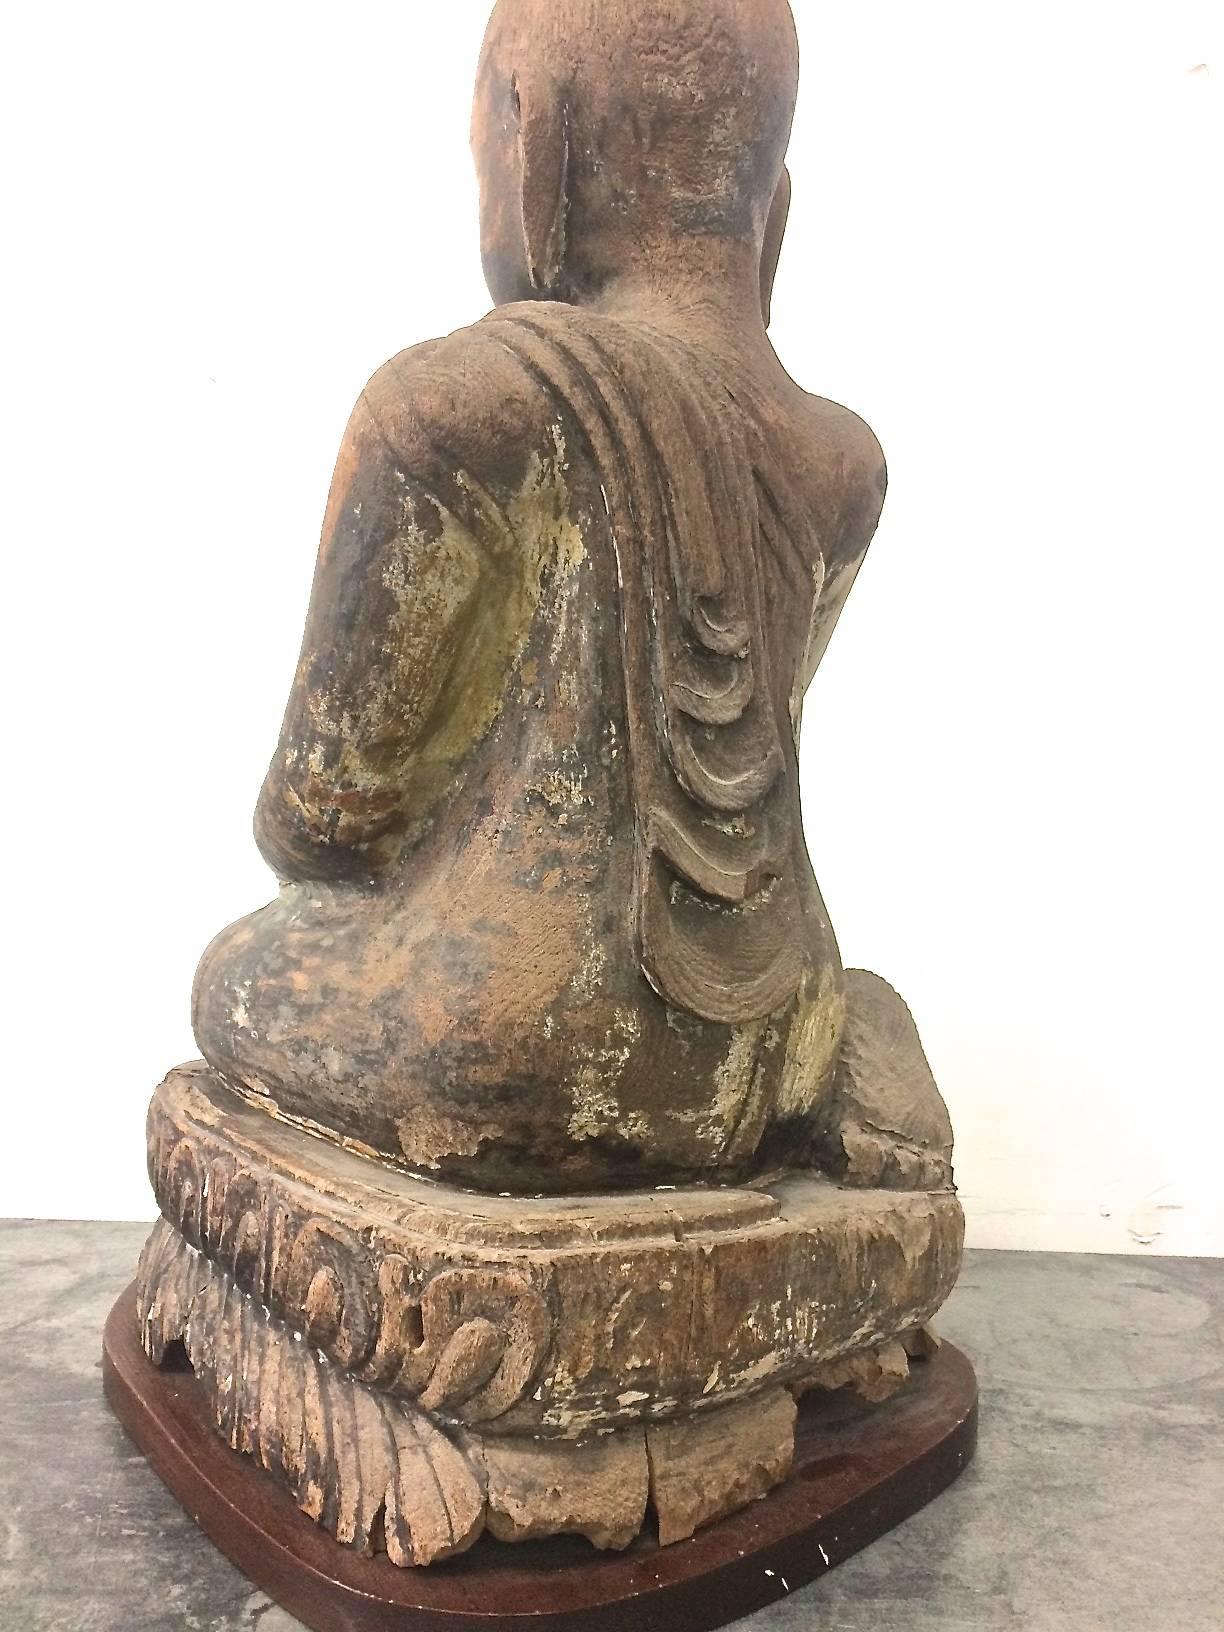 monk found in statue